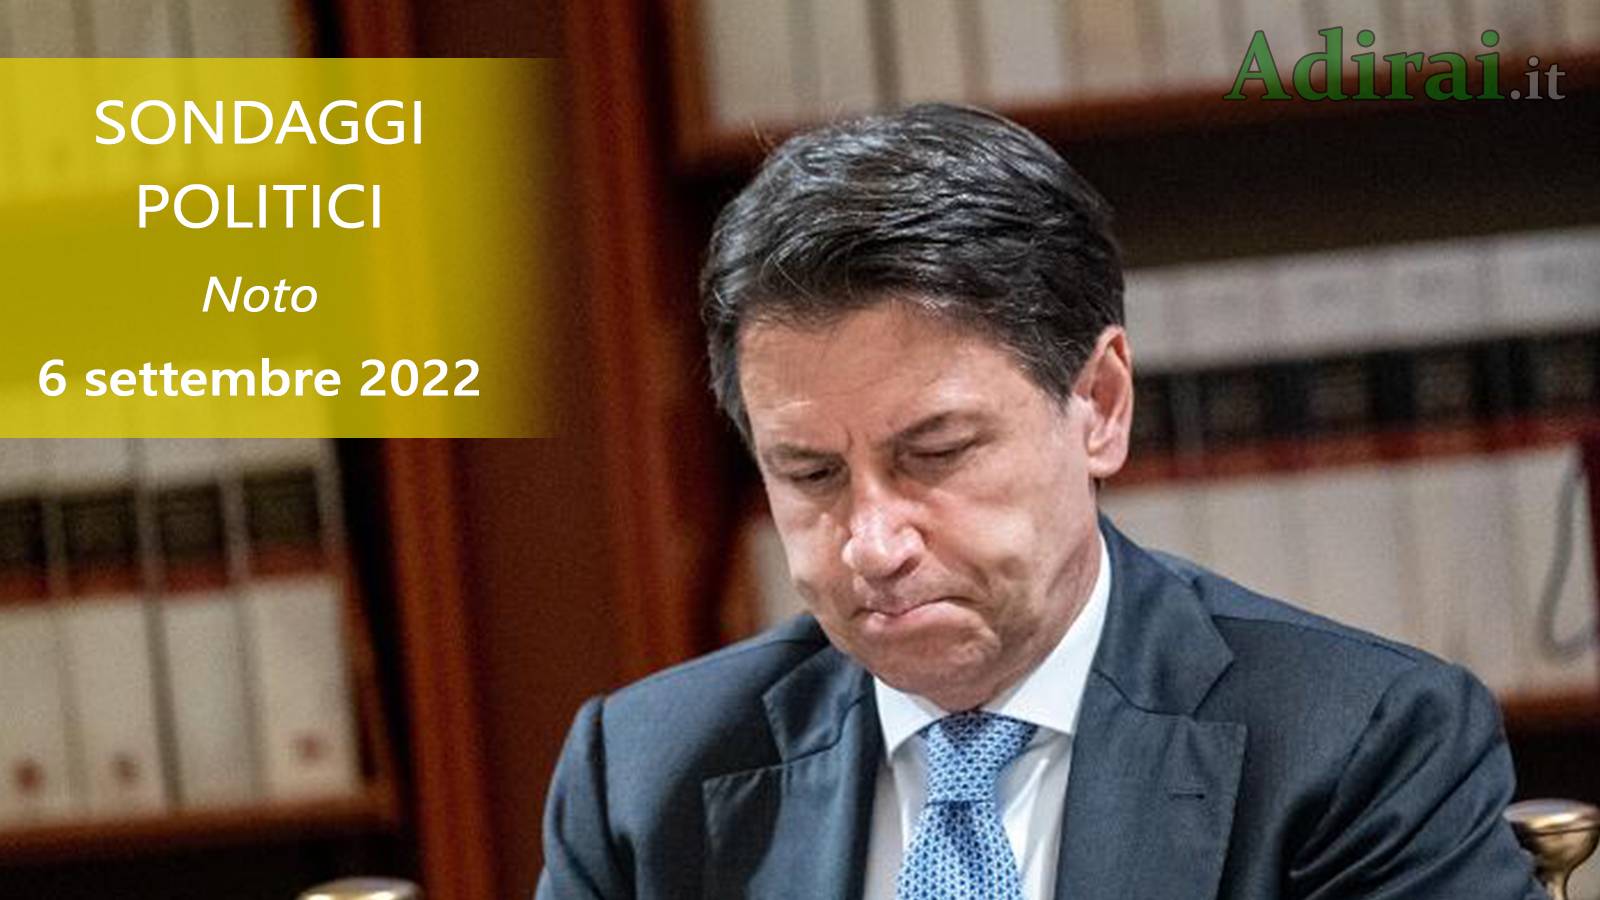 ultimi sondaggi politici 6 settembre 2022 noto di tutti i partiti italiani